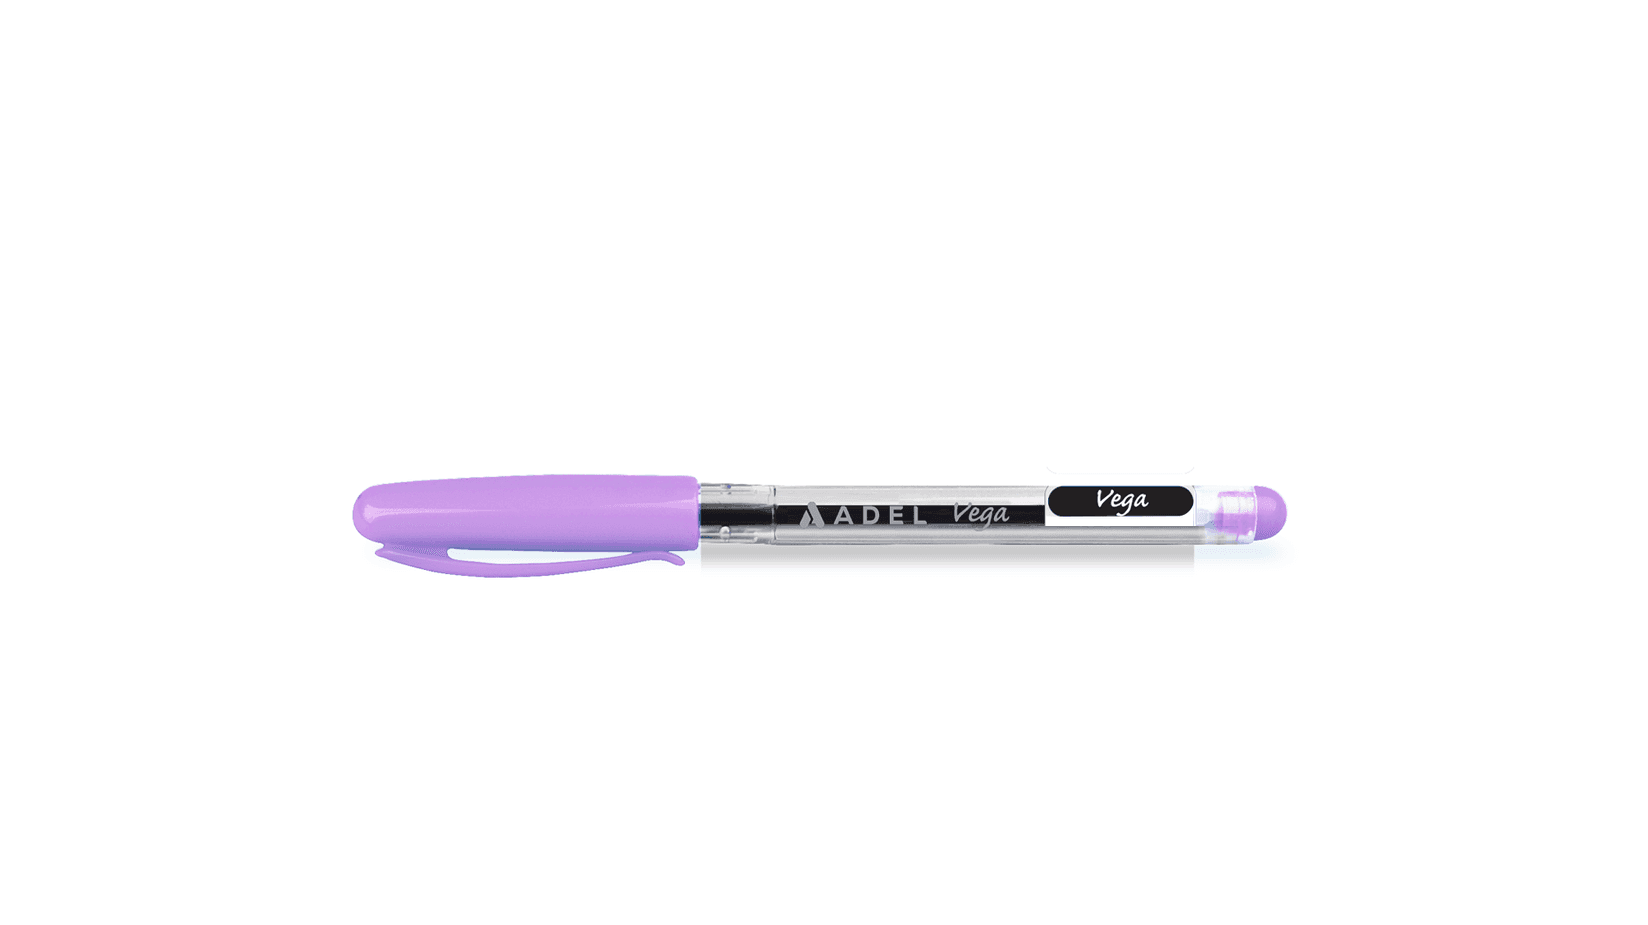 ADEL Hemijska olovka Vega ljubičasta